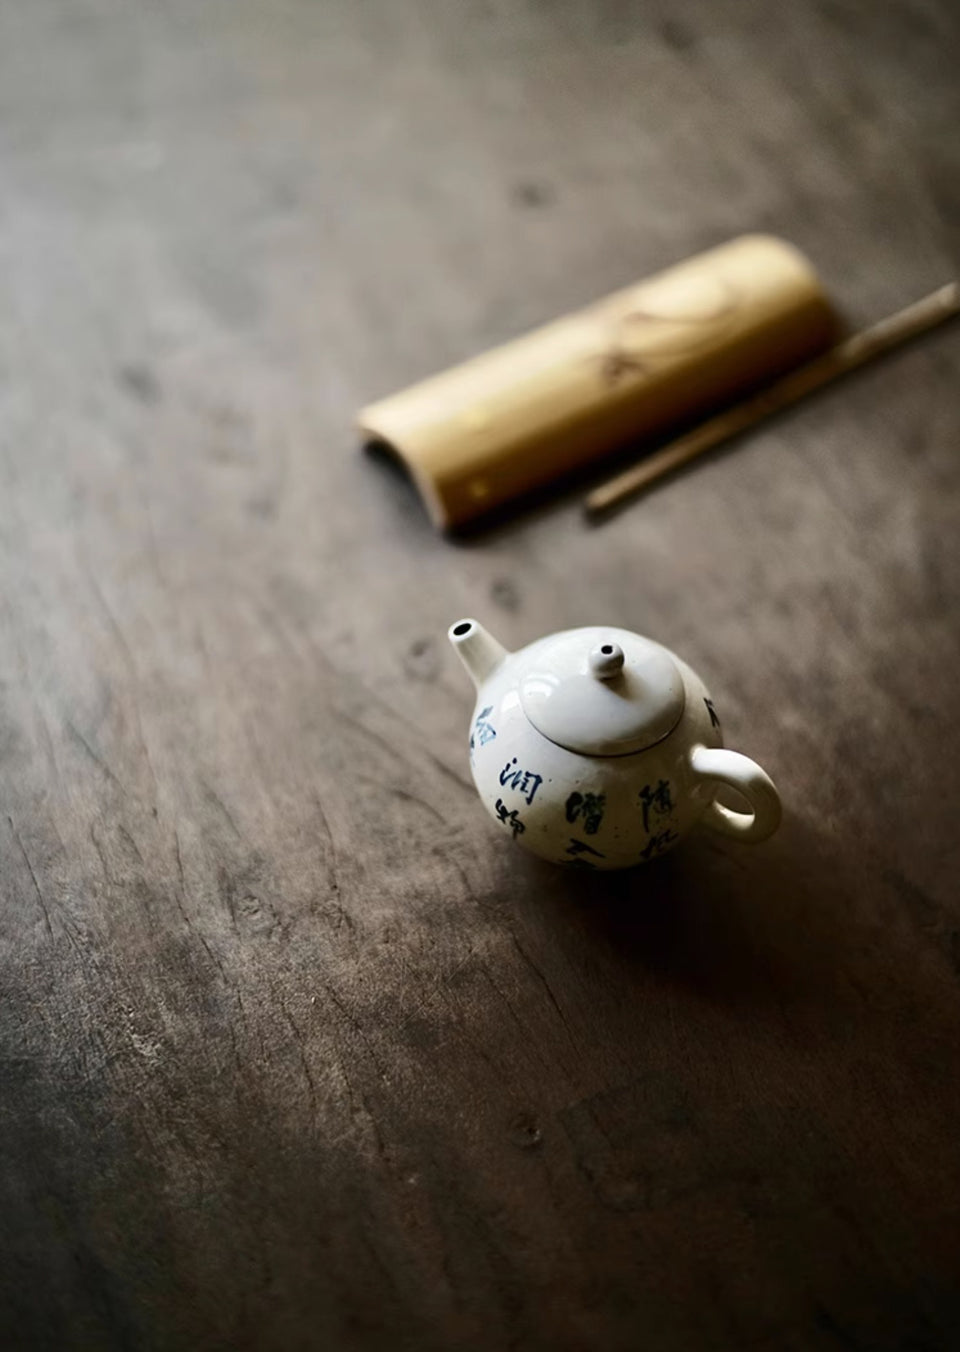 Qing Hua Blue & White Fen Yin Teapot